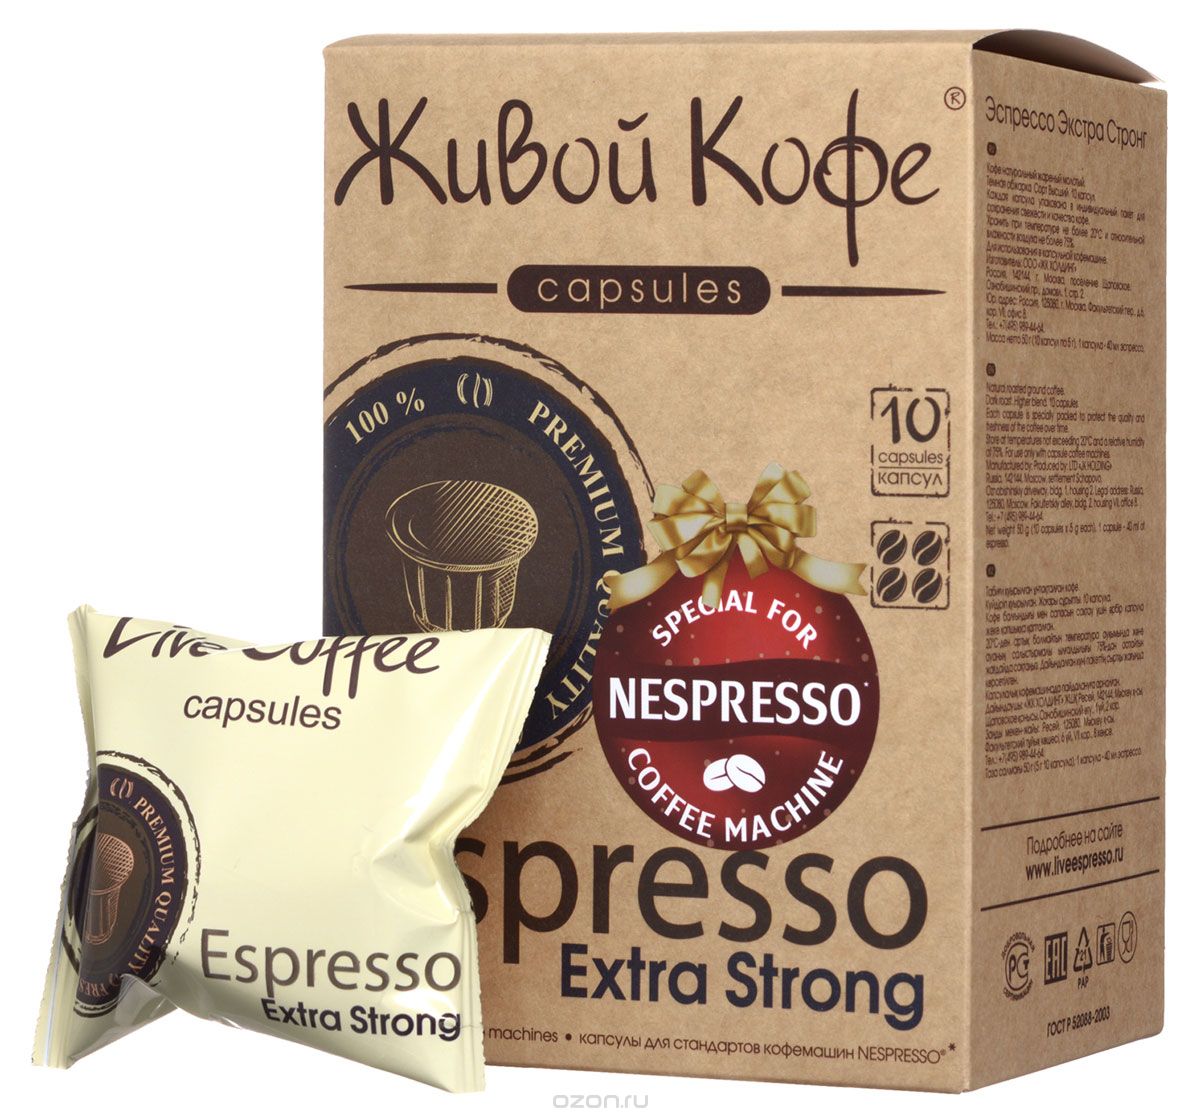   Espresso Extra Strong    ( ), 10 